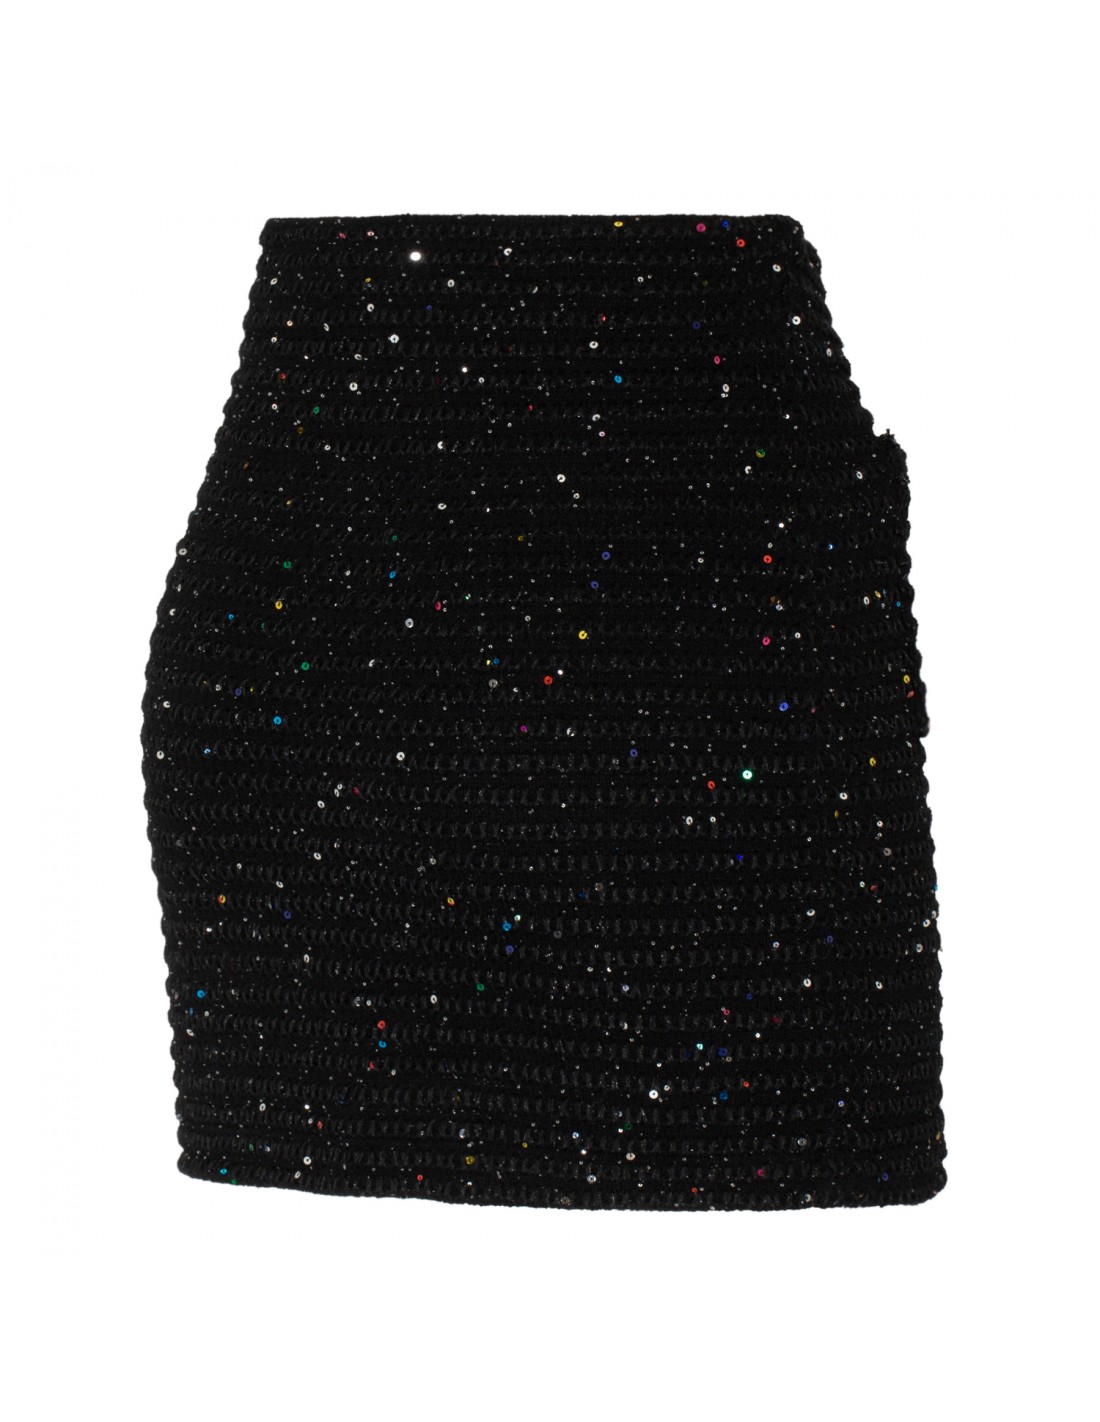 Black sequin knit skirt